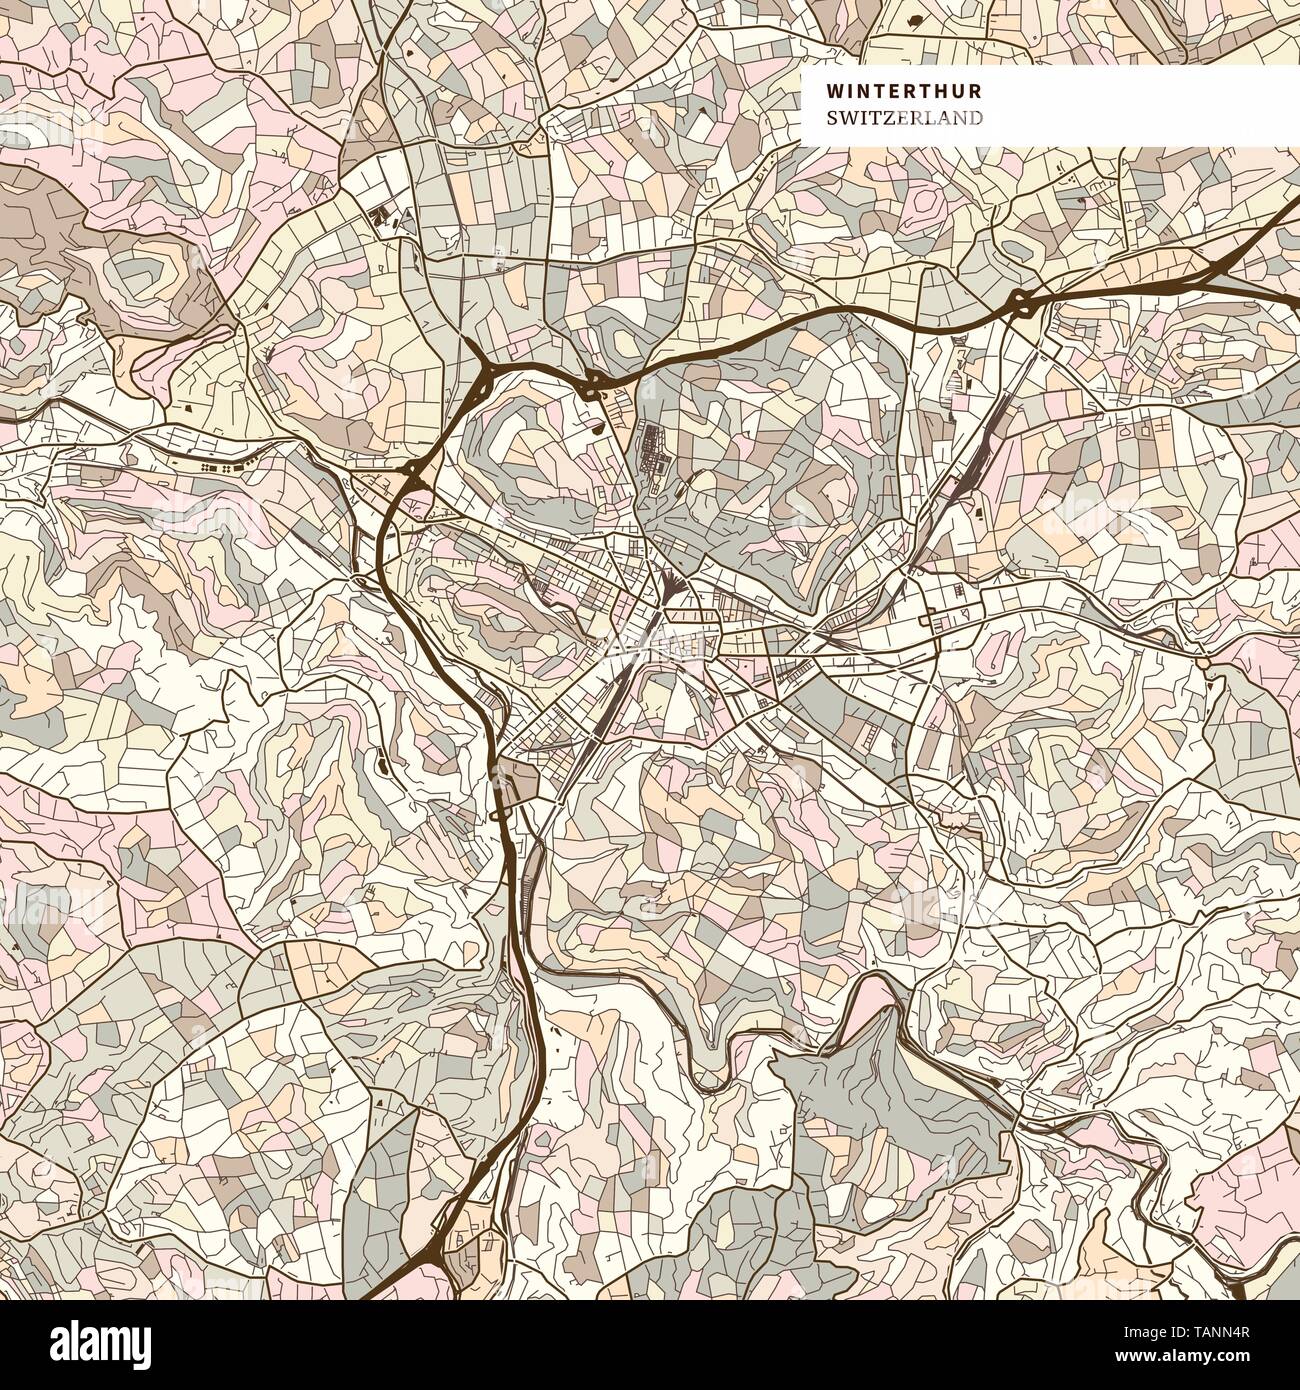 Site de Winterthur, brown version colorée pour les applications web, d'impression ou d'artifices Illustration de Vecteur